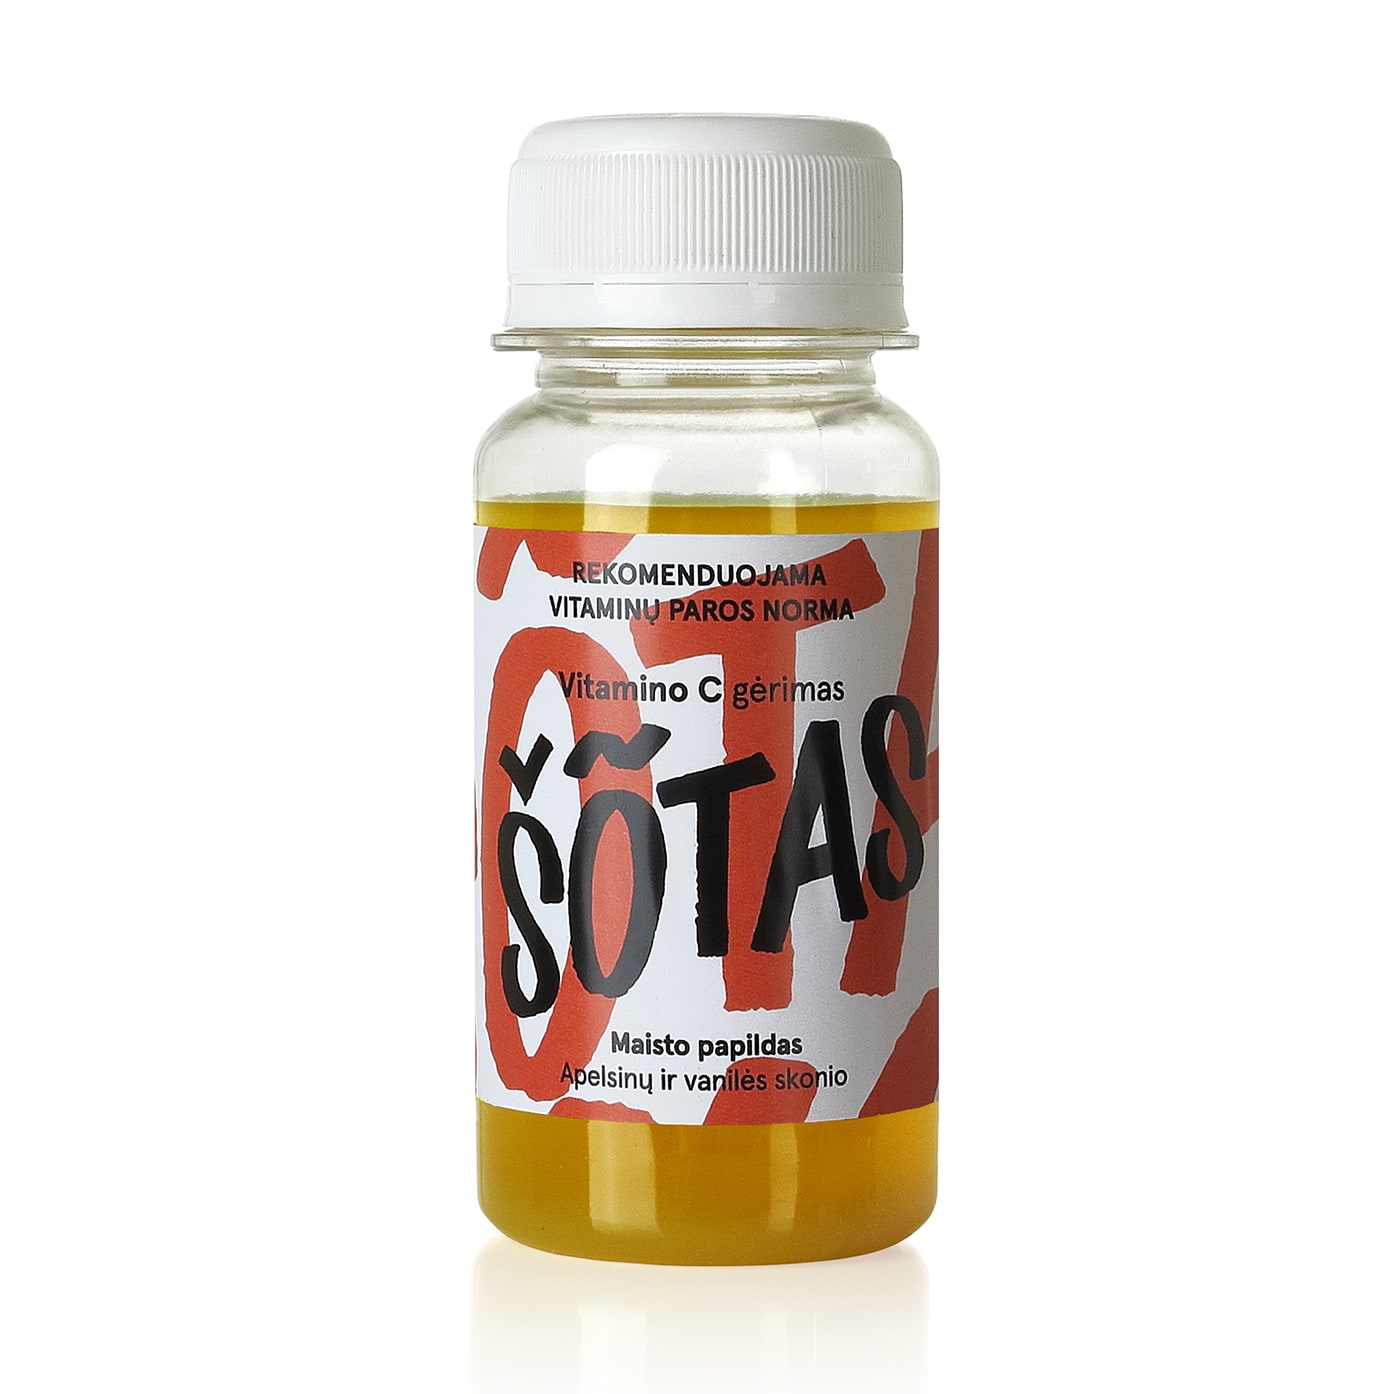 2-SOTAS-Apelsinu